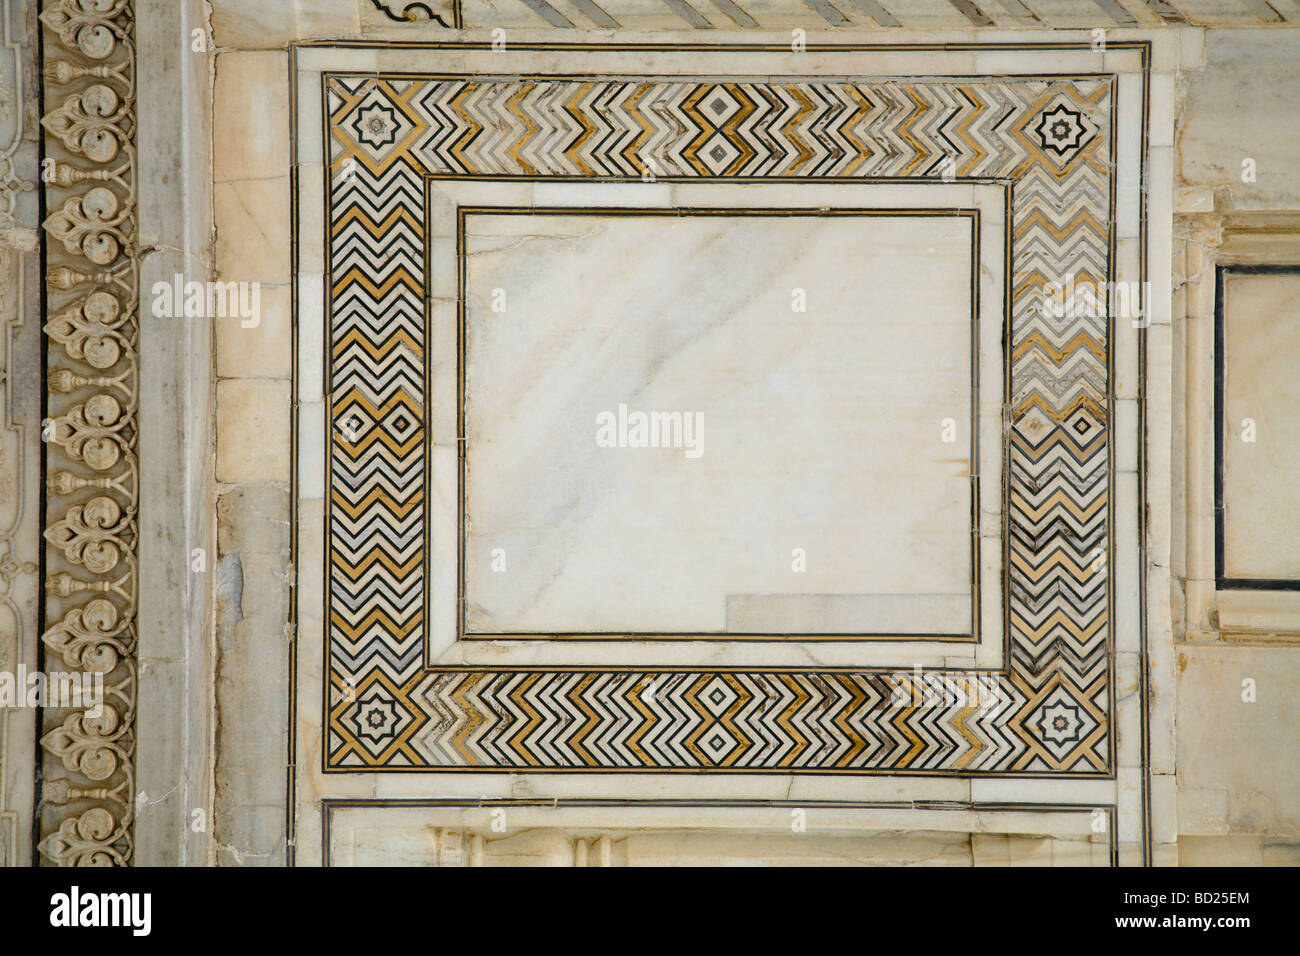 Steinmauer die wichtigsten Taj Mahal-Mausoleum aus Marmor und mit kunstvoll geschnitzten Intarsien verziert. Taj Mahal, Agra. Indien. Stockfoto